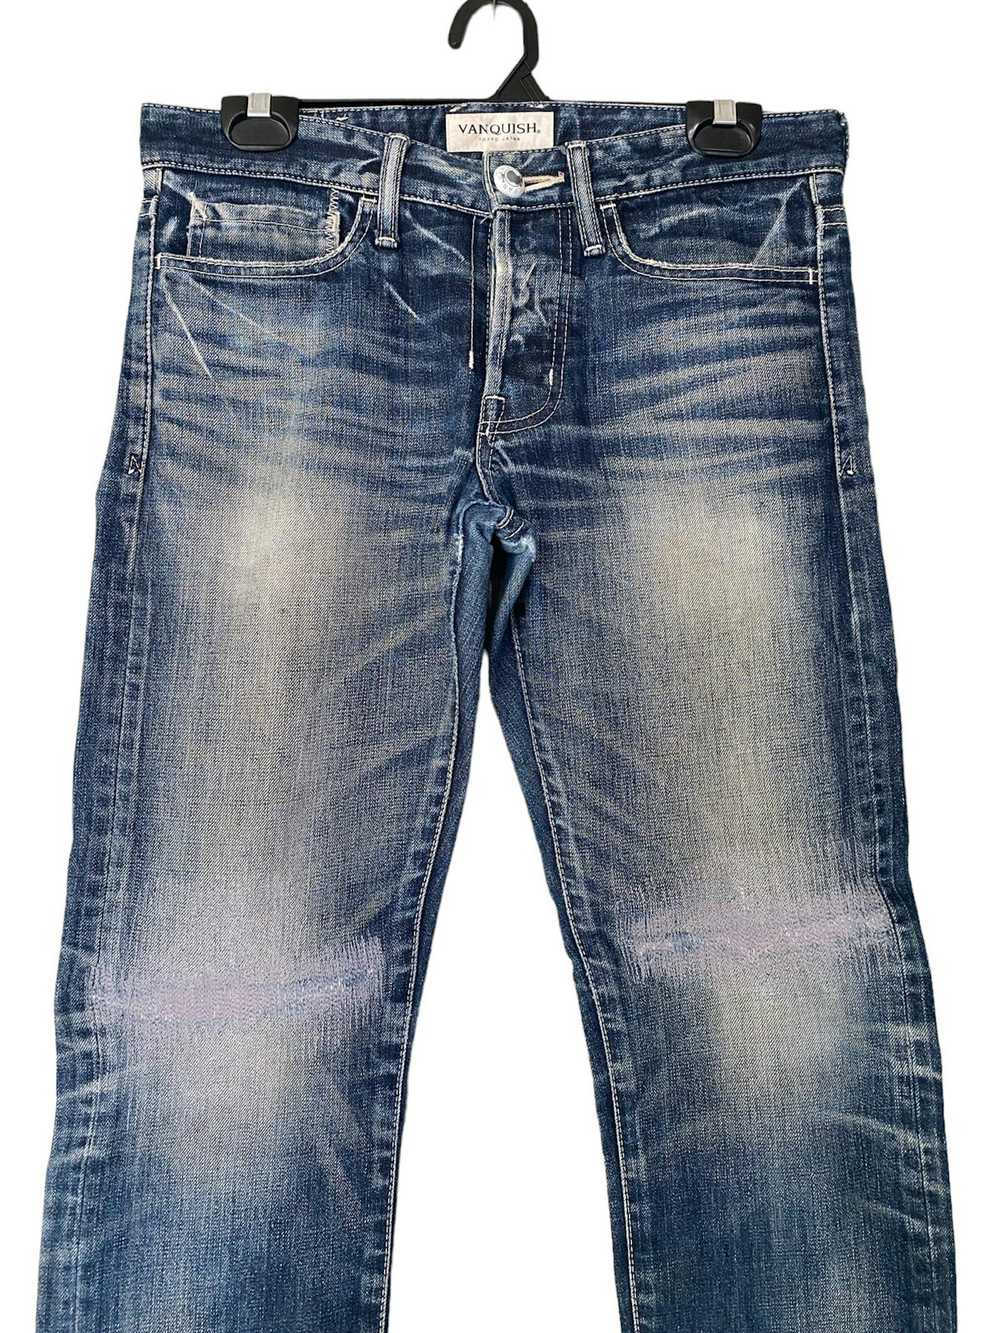 Vanquish Vanquish Distressed Jeans - image 2